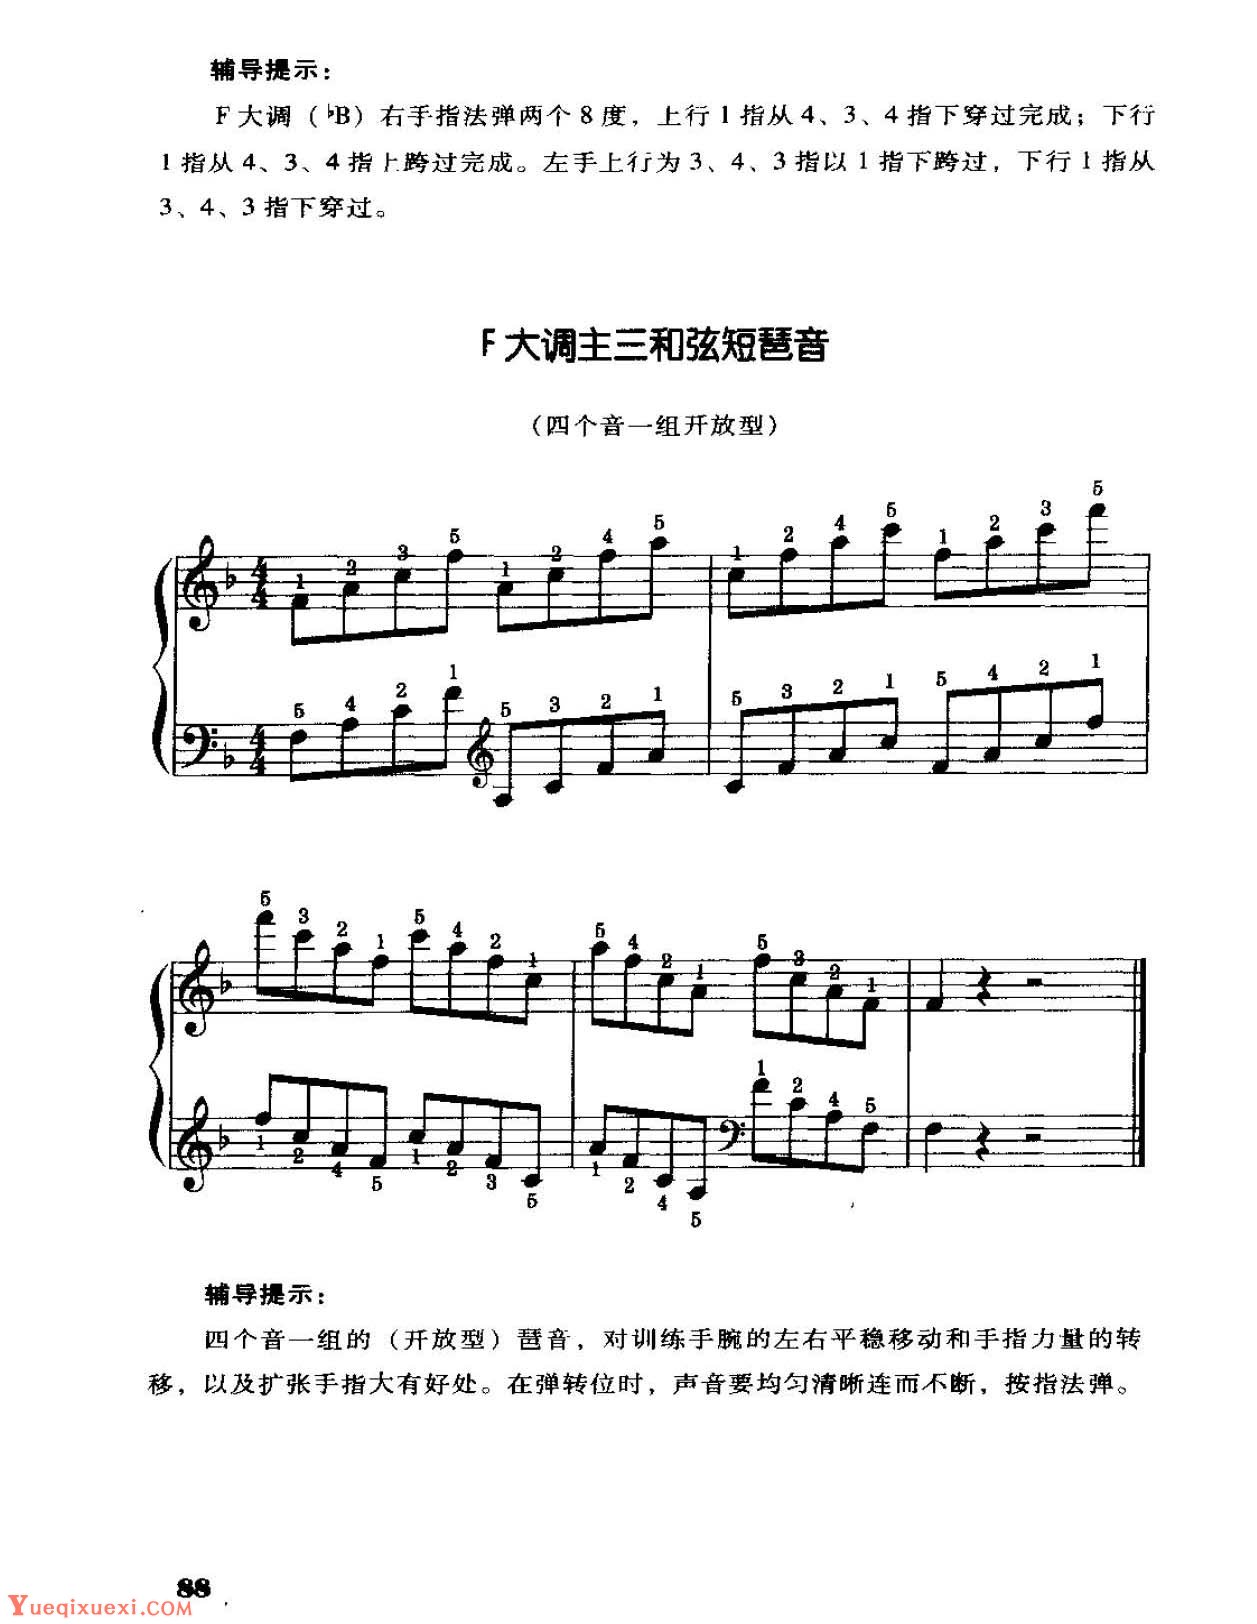 电子琴常用调练习曲多指和弦伴奏 F大调音阶、终止式、琶音